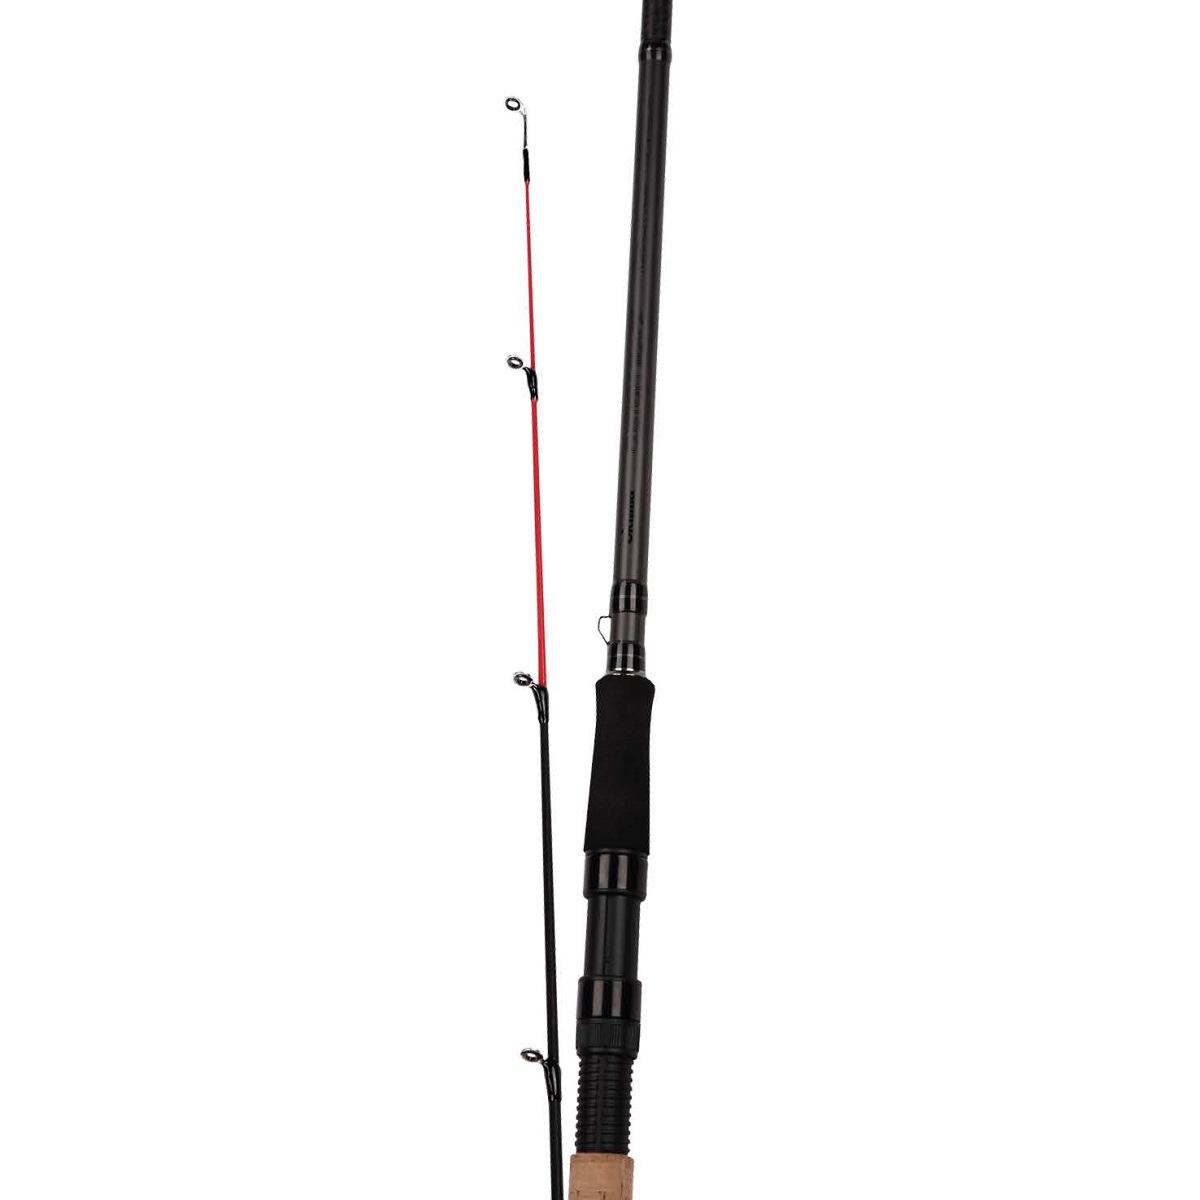 Custom Black Feeder Rod - Custom Black Feeder Rod